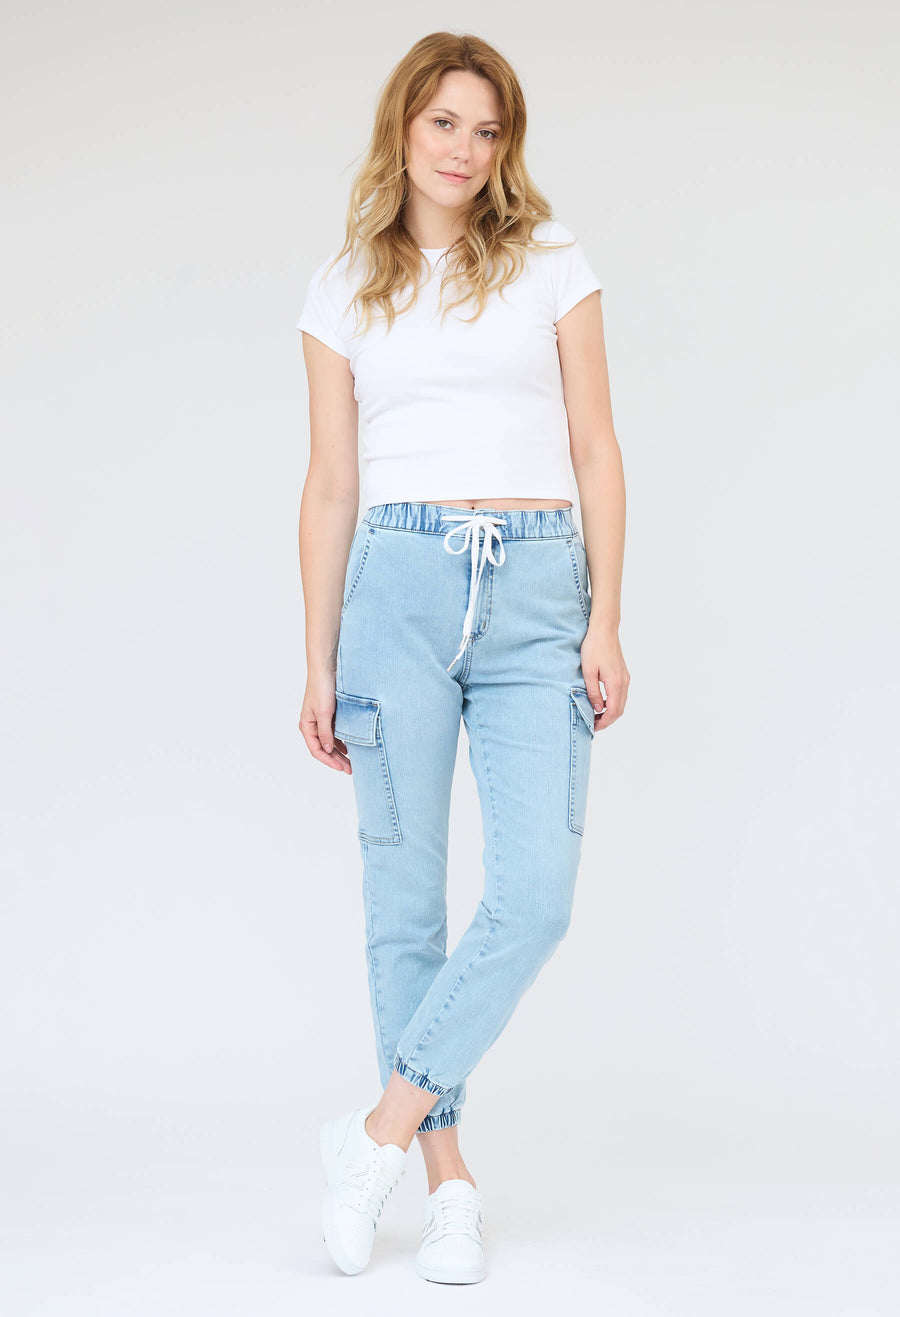 Jeans capri Malia avec poches, collaboration YOGA-JEANS et KSL, de couleur bleu-pâle!